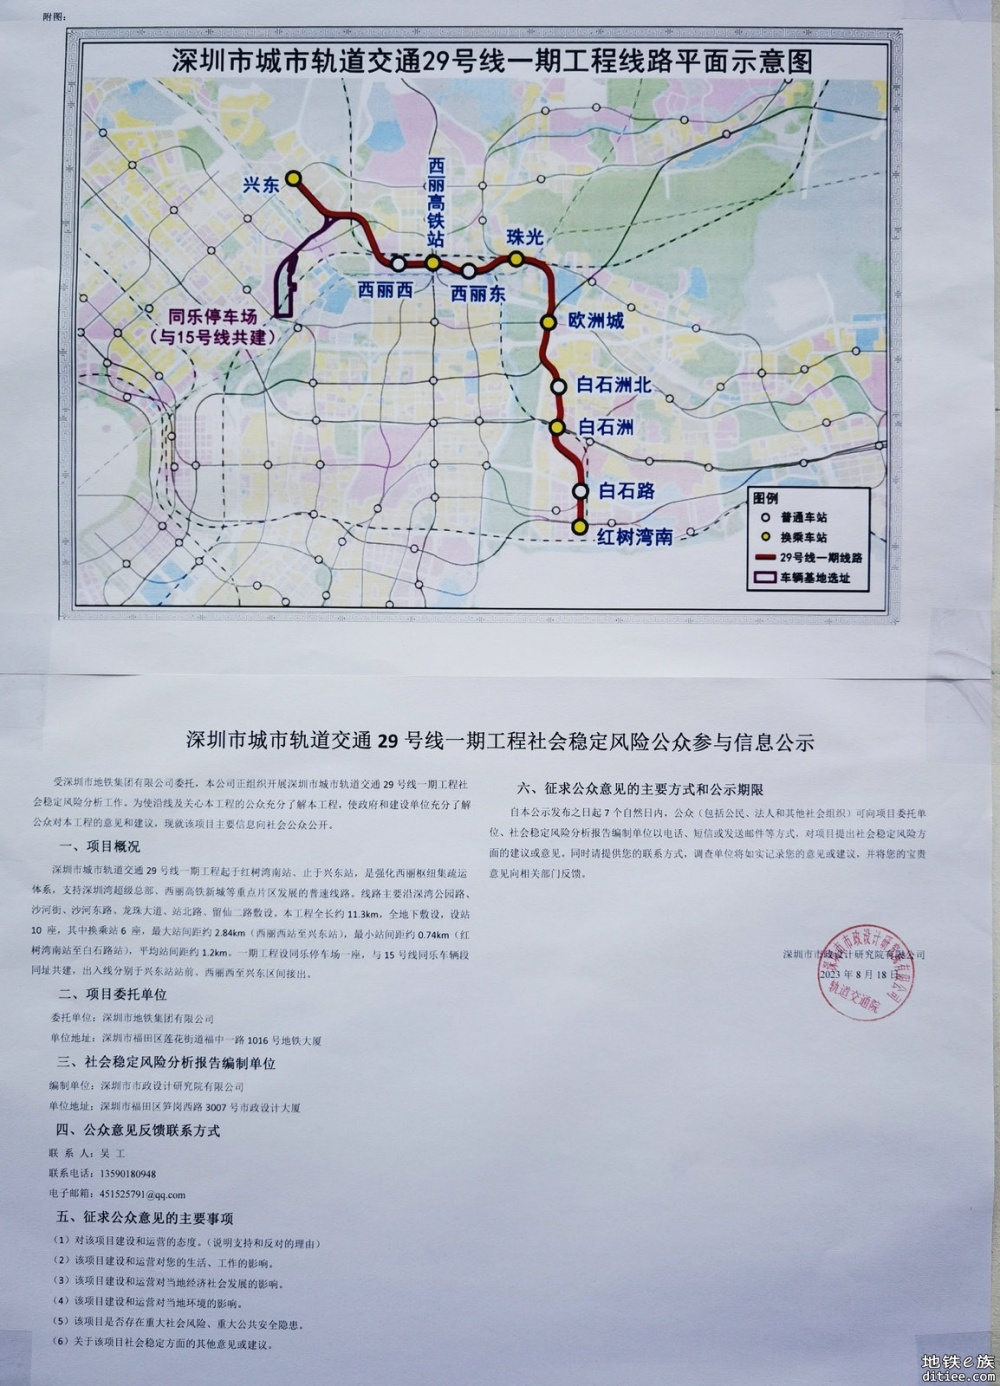 深圳地铁29号线一期社会稳定风险公众参与信息公示